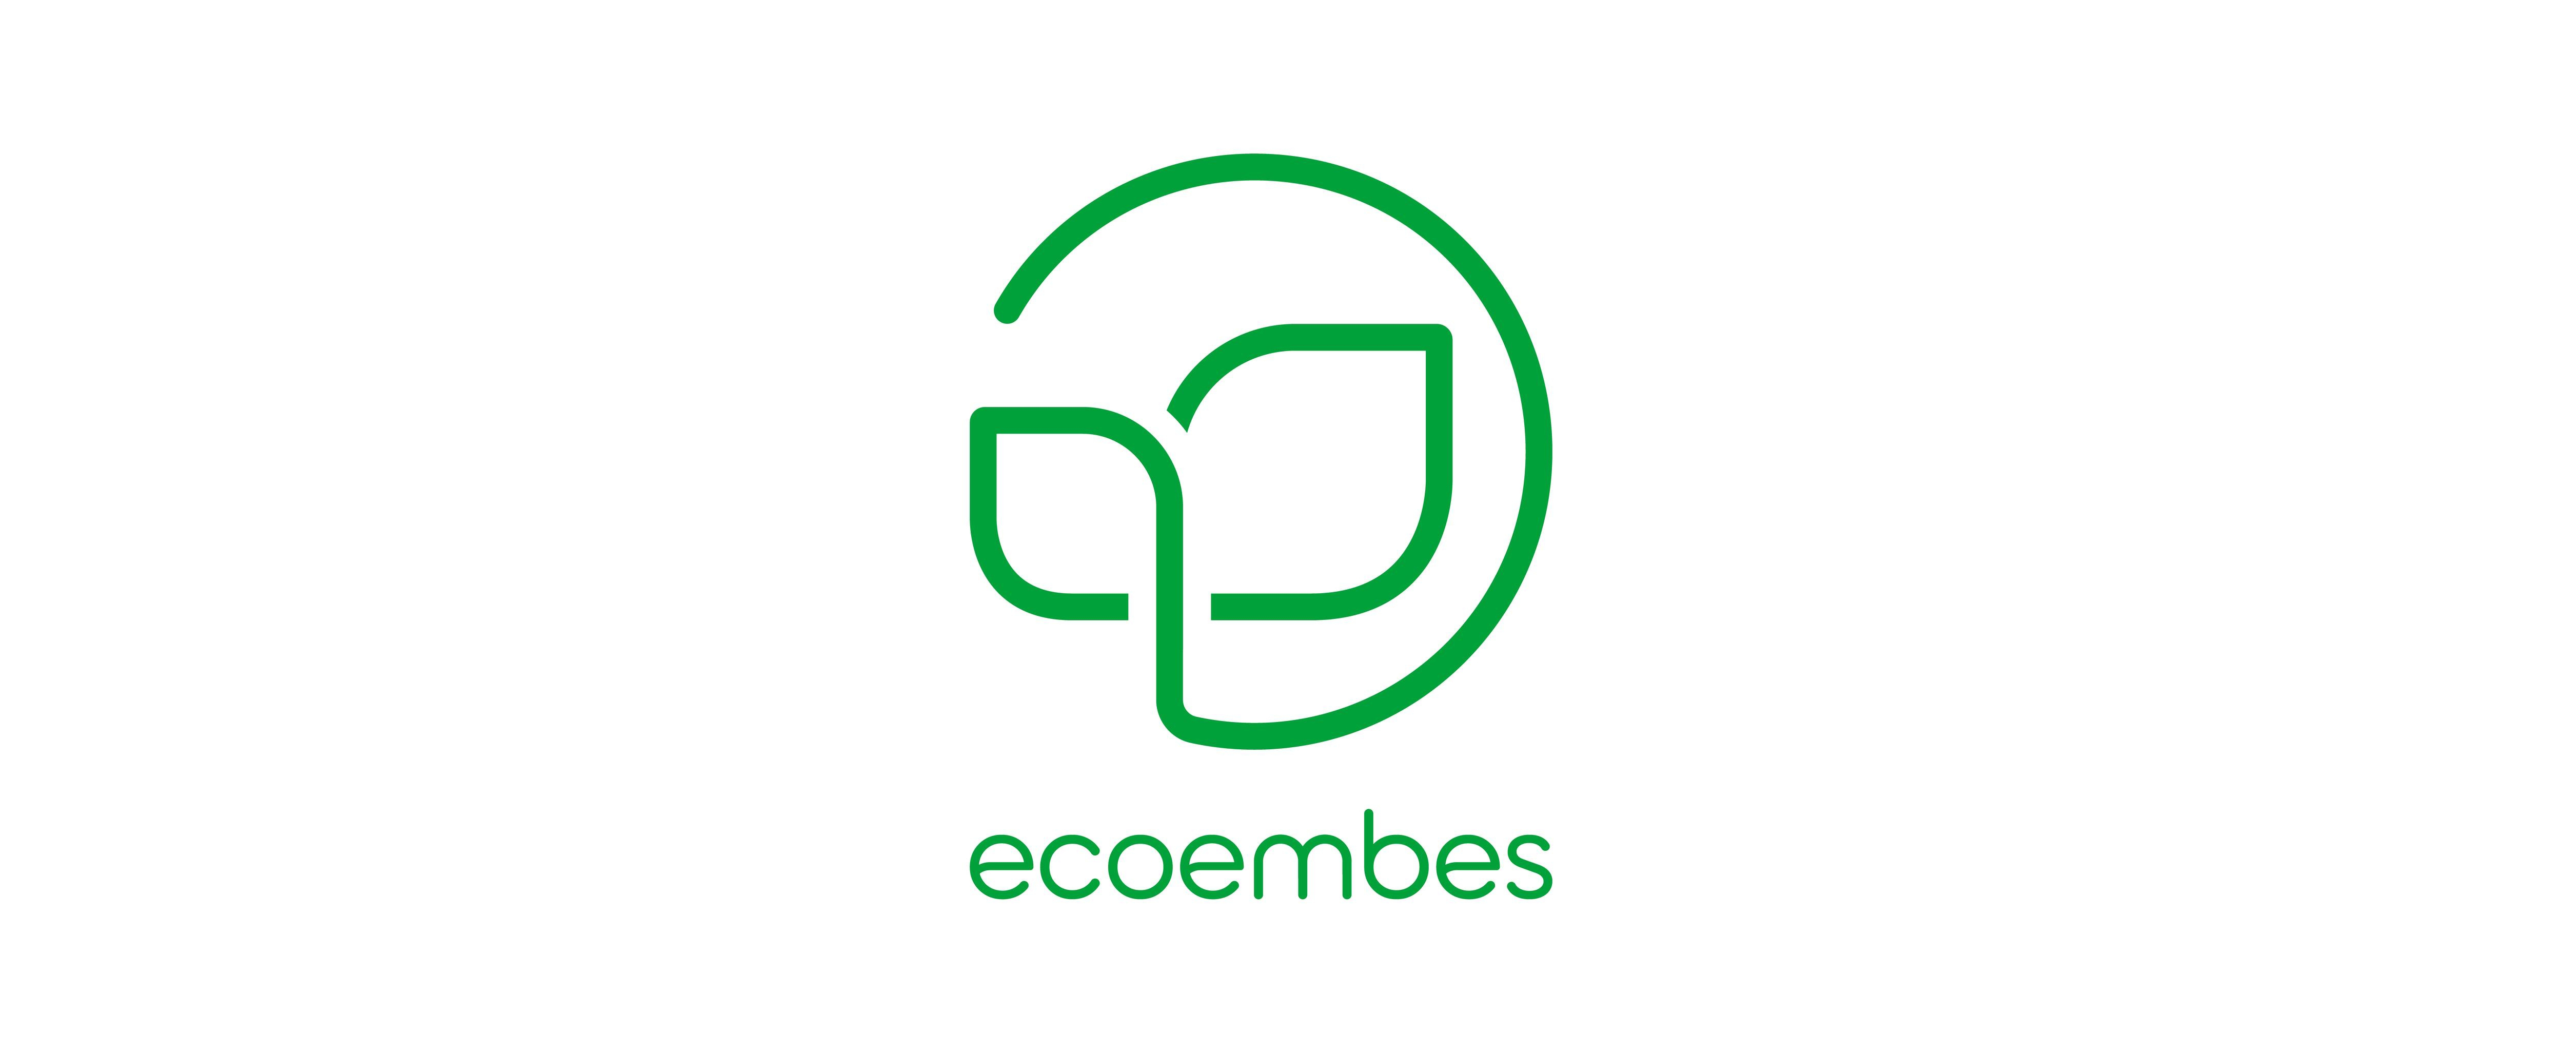 Ecoembes estrena nueva etapa e imagen de marca y apuesta por el ecobranding para reflejar su contribución al cuidado del medioambiente